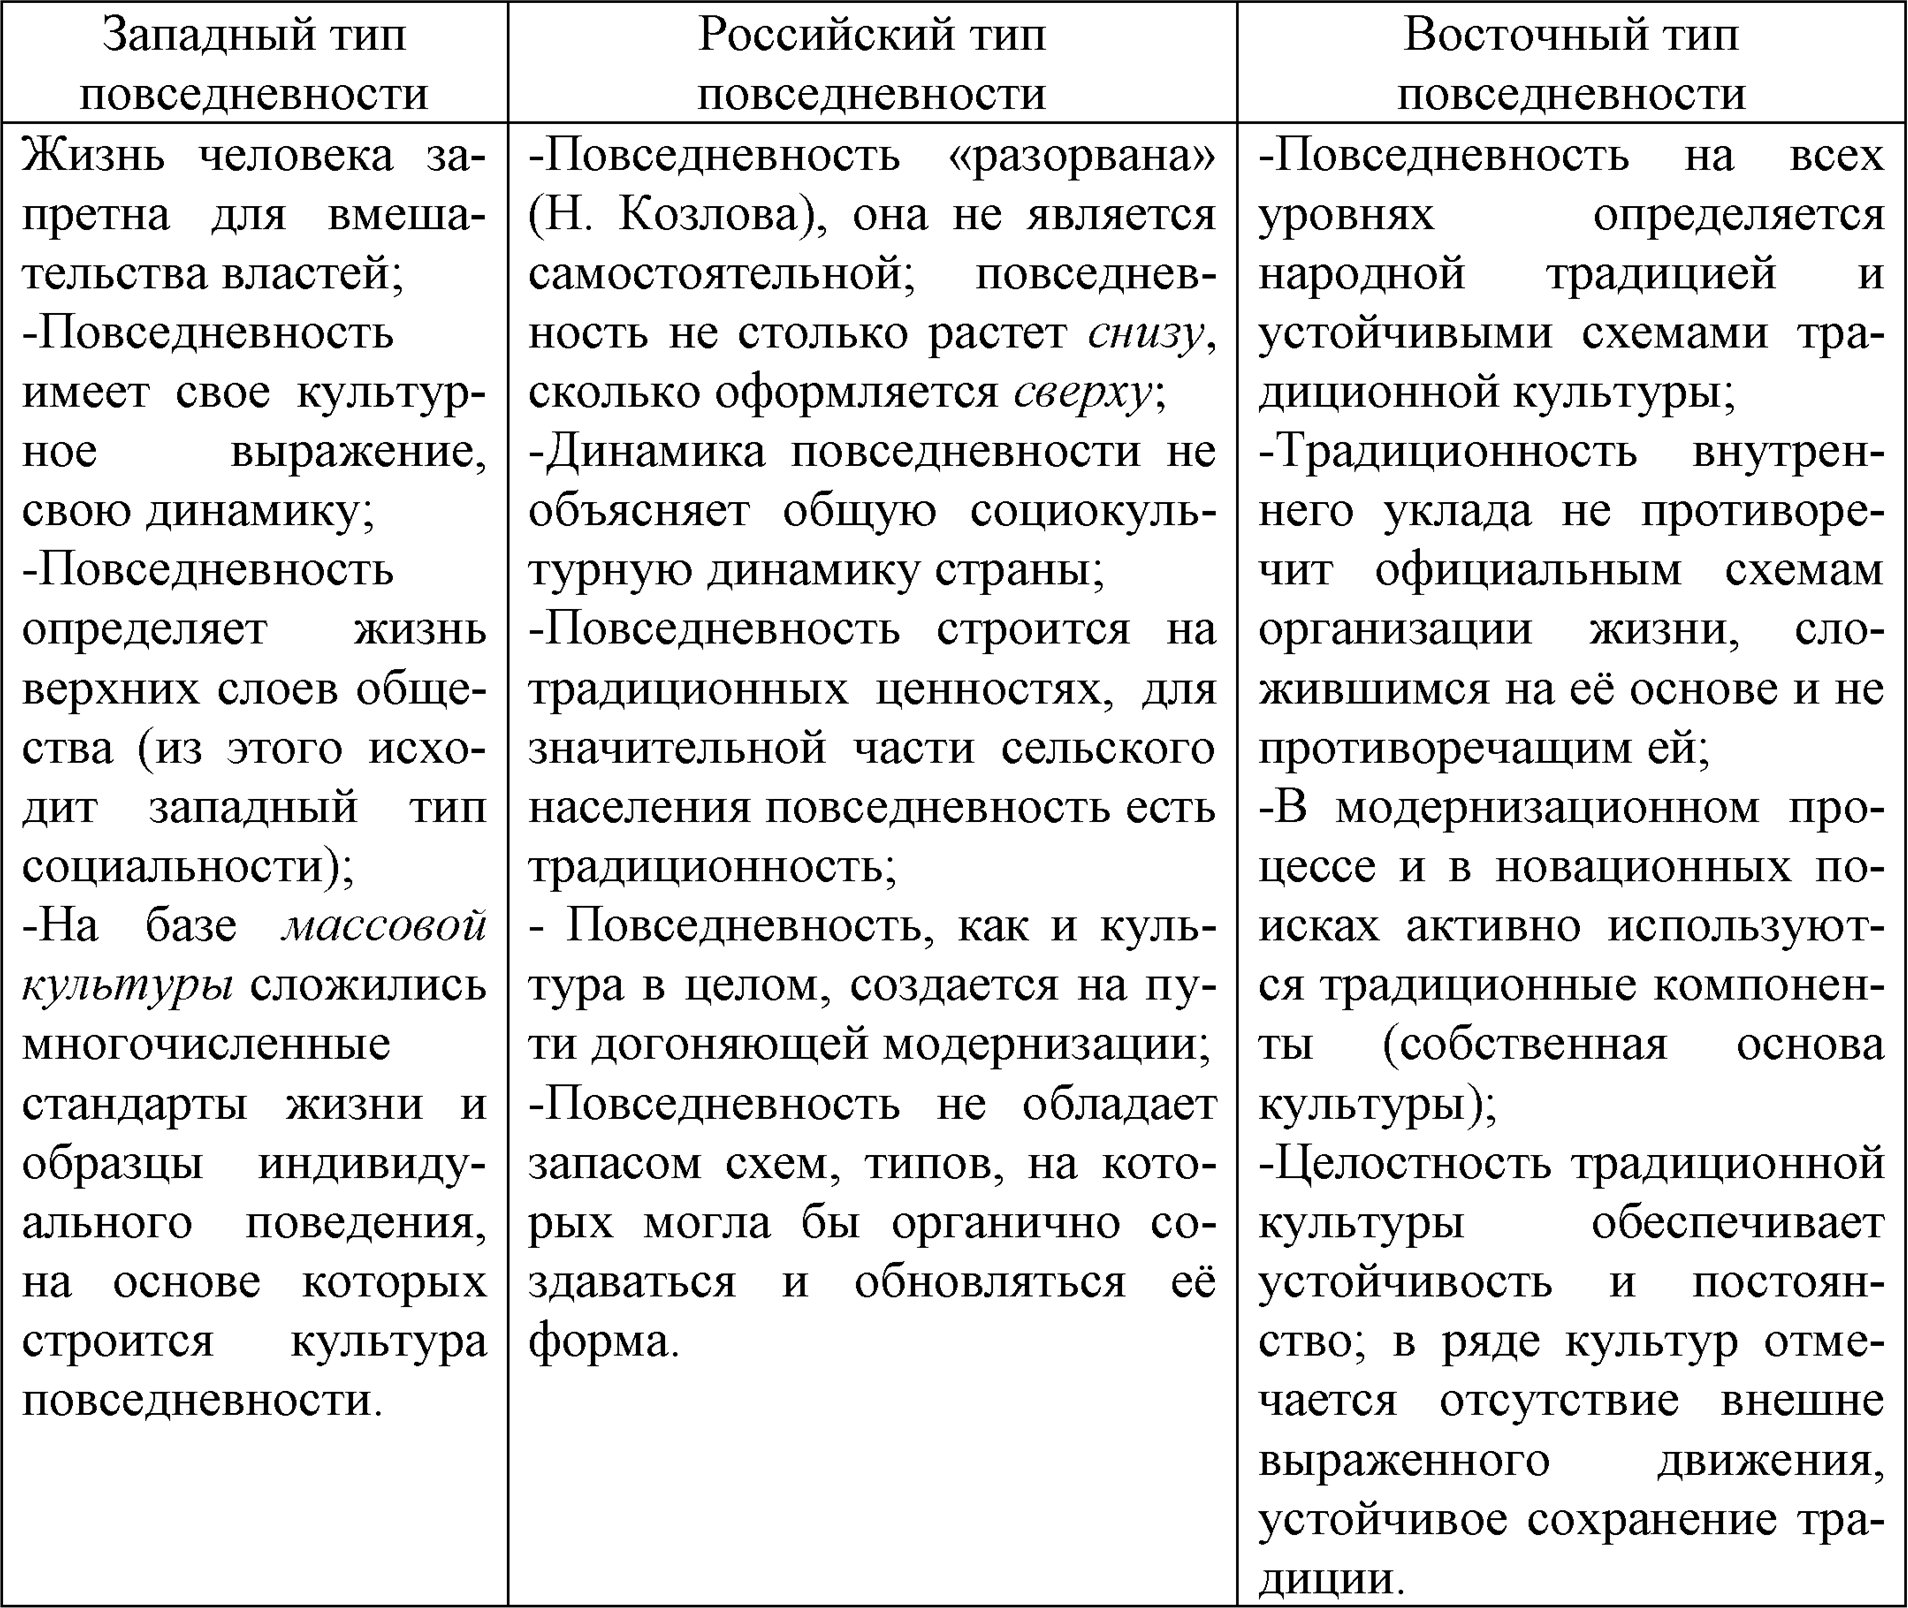 Сравнительные характеристики повседневной культуры западного, восточного и российского типа